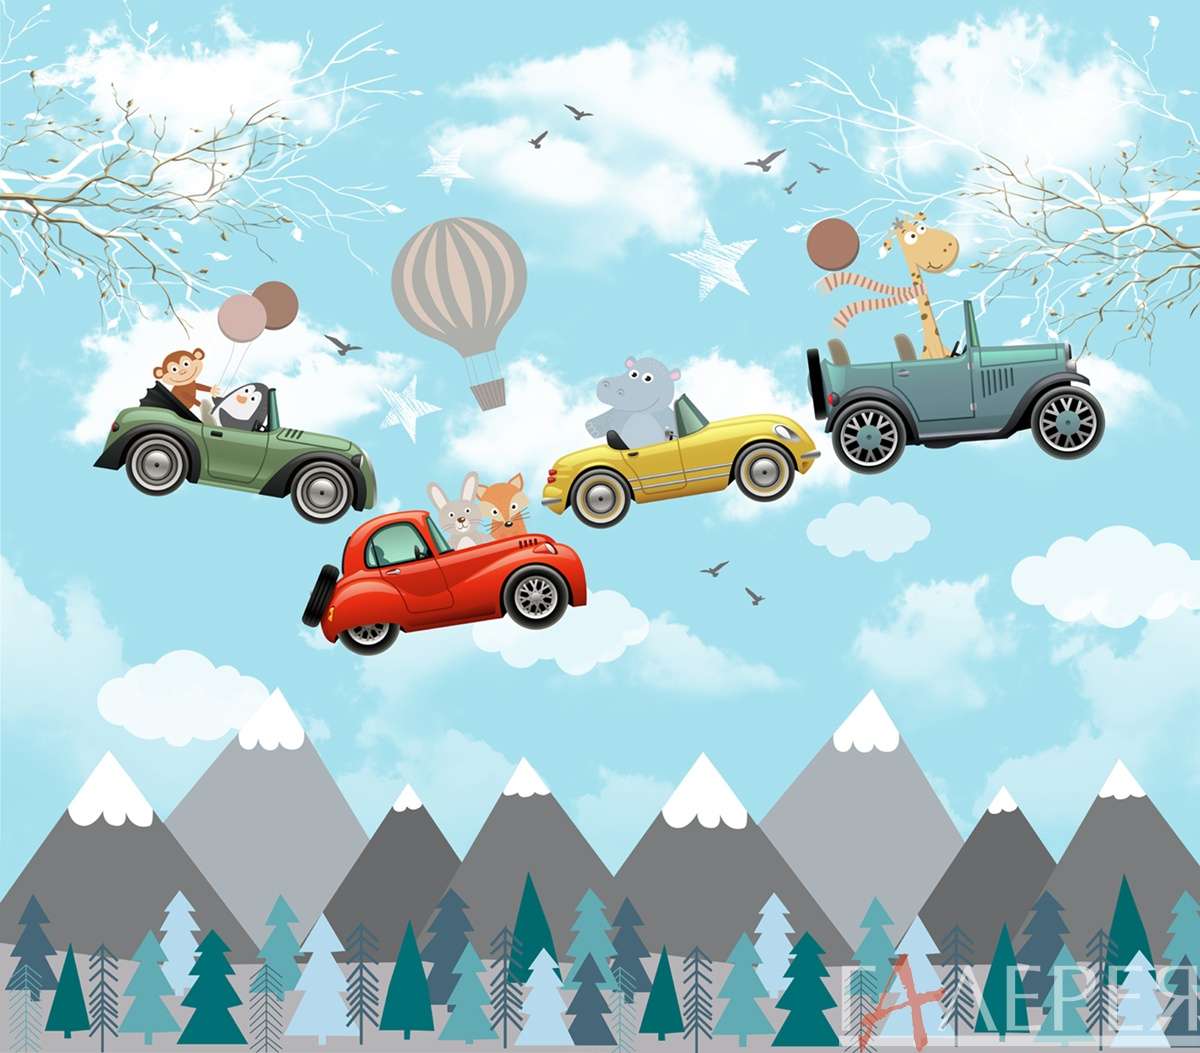 горы рисованные, воздушные шары, авто, машинки